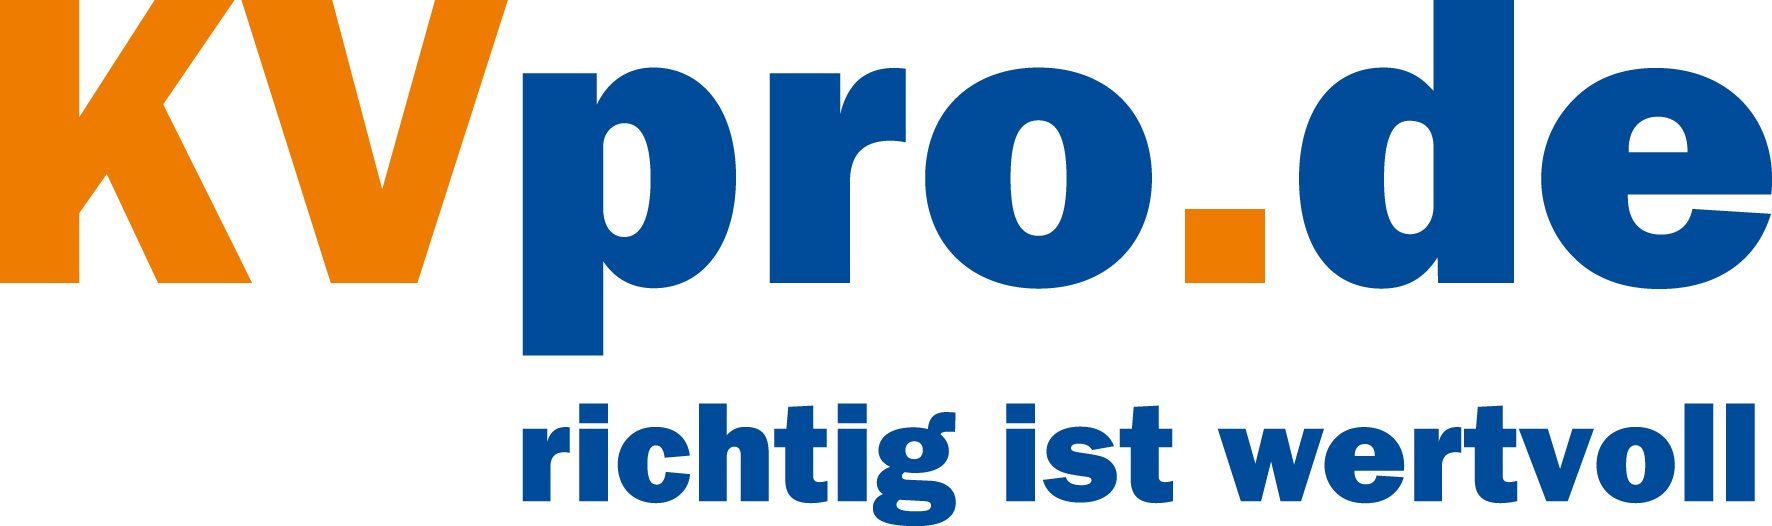 KVpro.de: Unisex in der PKV Ein Jahr der Veränderungen! Zukunft des dualen Krankenversicherungssystems weiterhin offen. Freiburg, 04. Februar 2014 Nach Einführung der Unisex-Tarife zum 21.12.